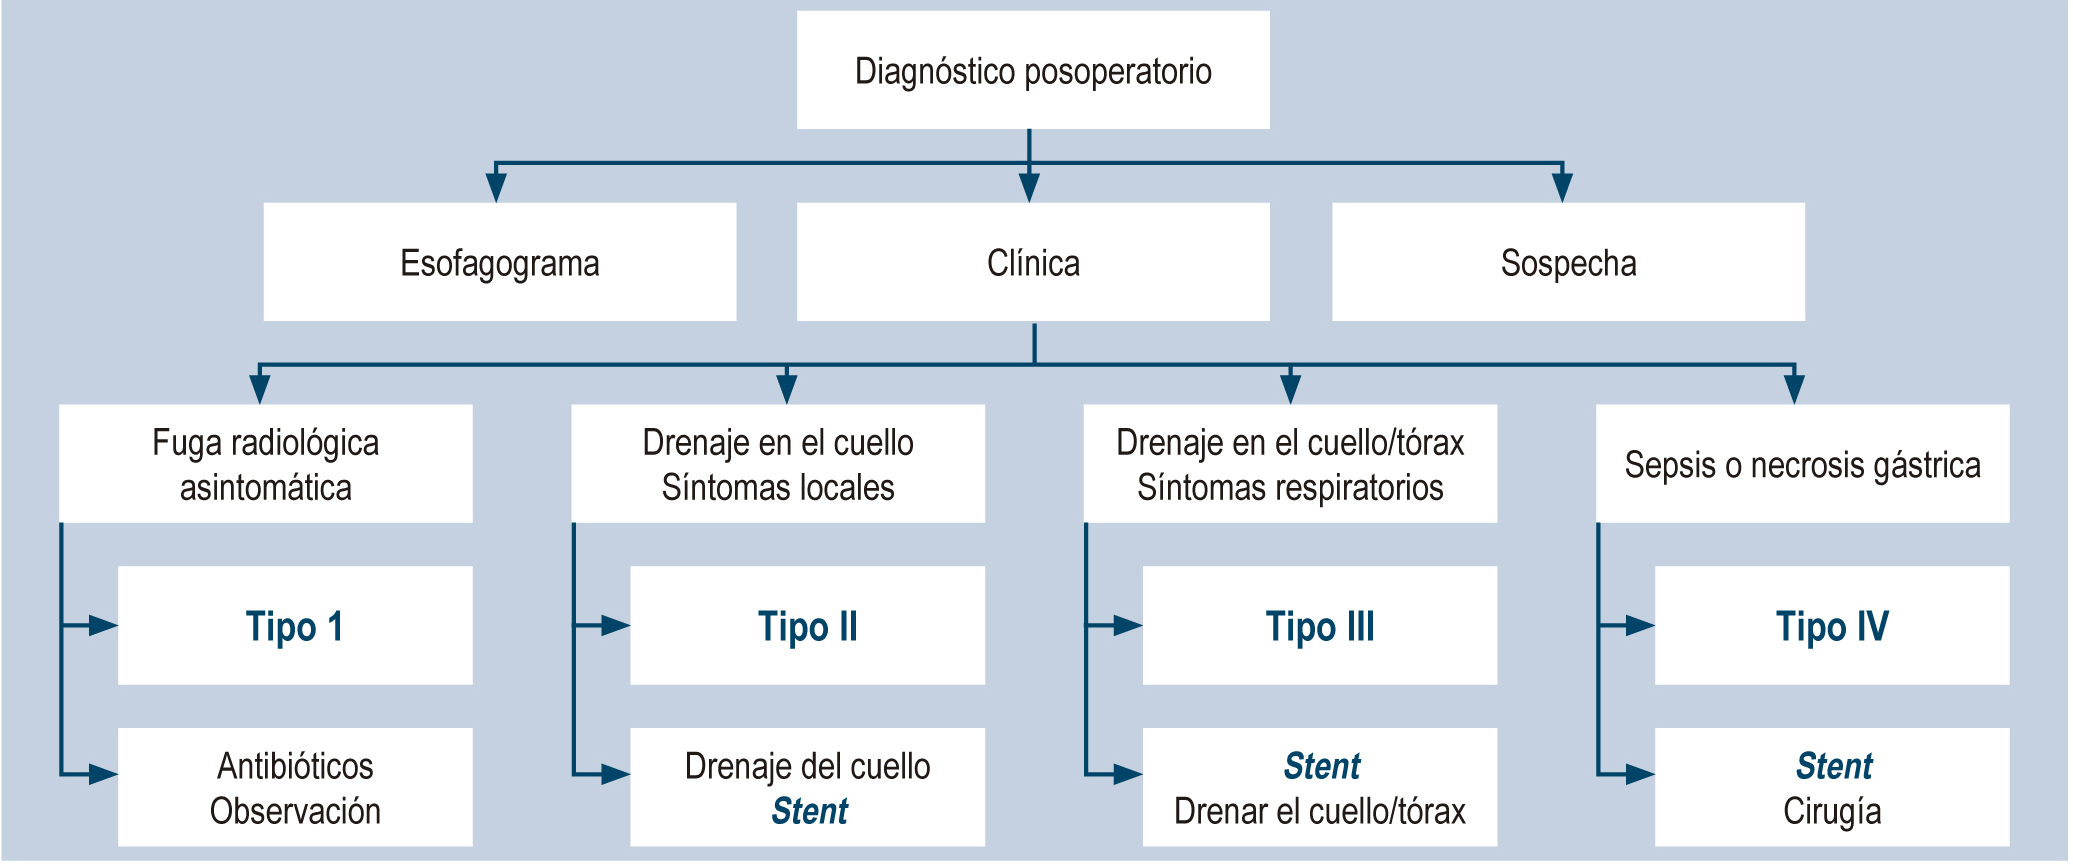 Figura 1. Algoritmo para el diagnóstico y manejo de las fístulas esofagogástricas posoperatorias